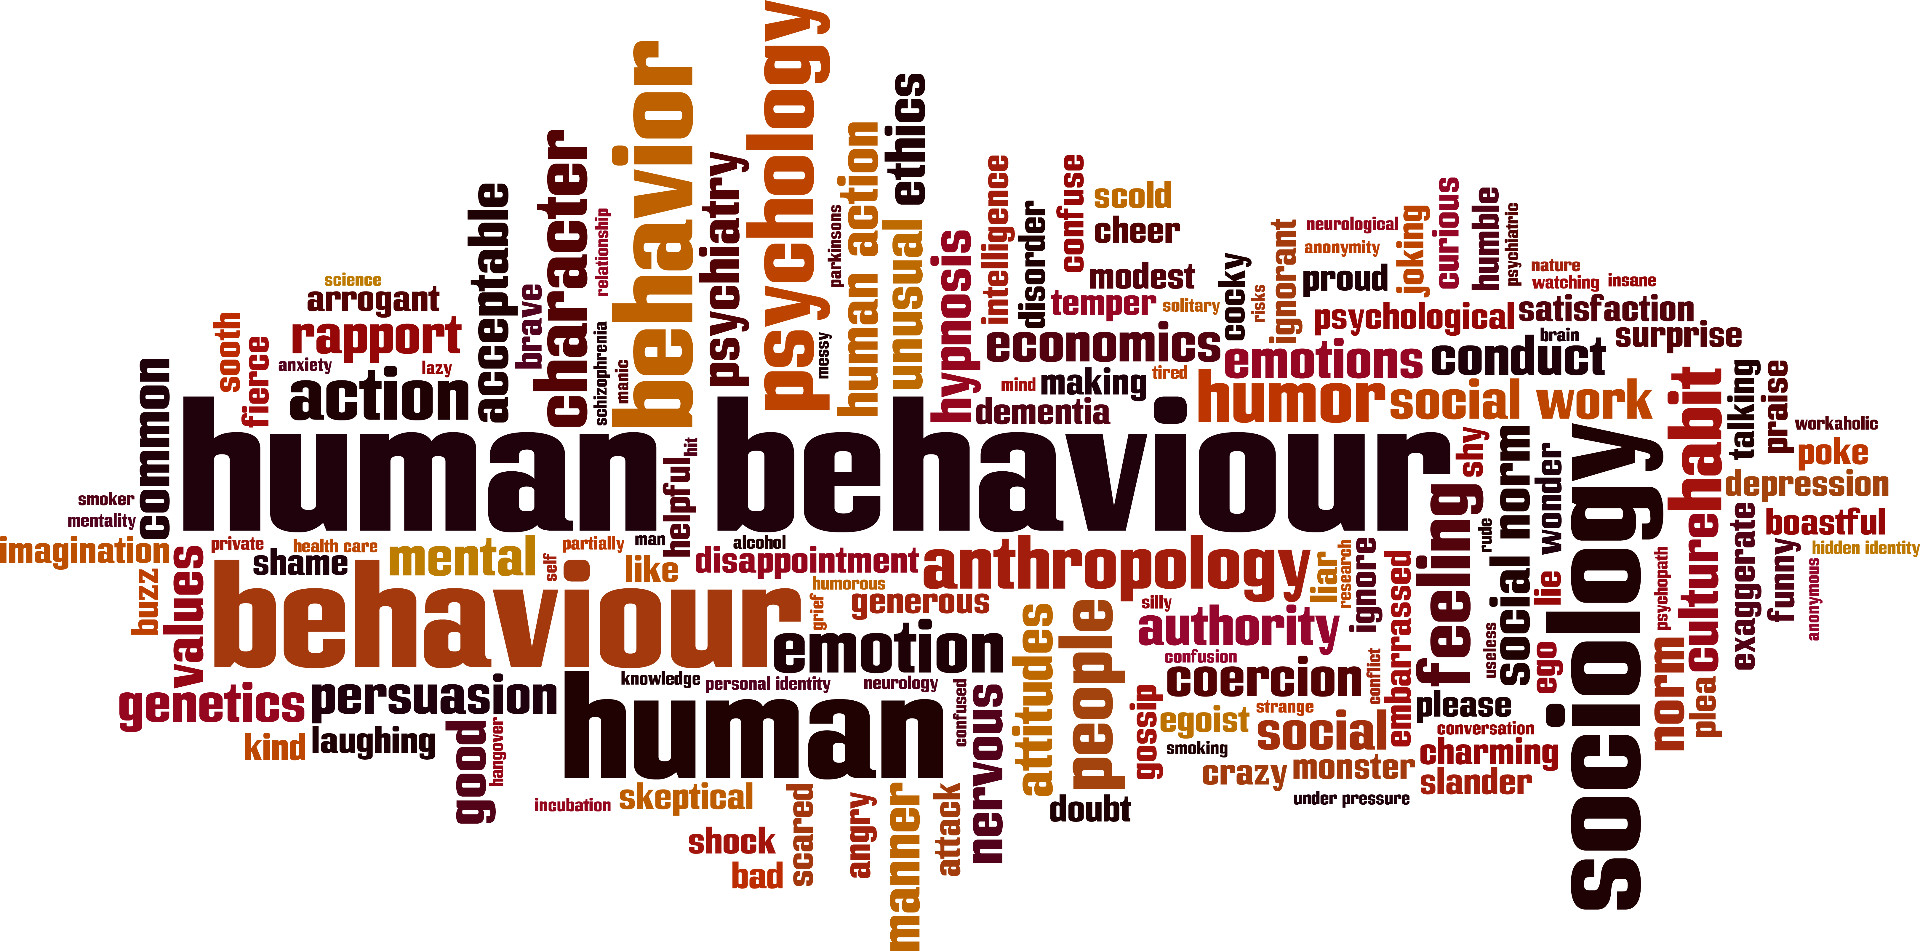 Human behaviour